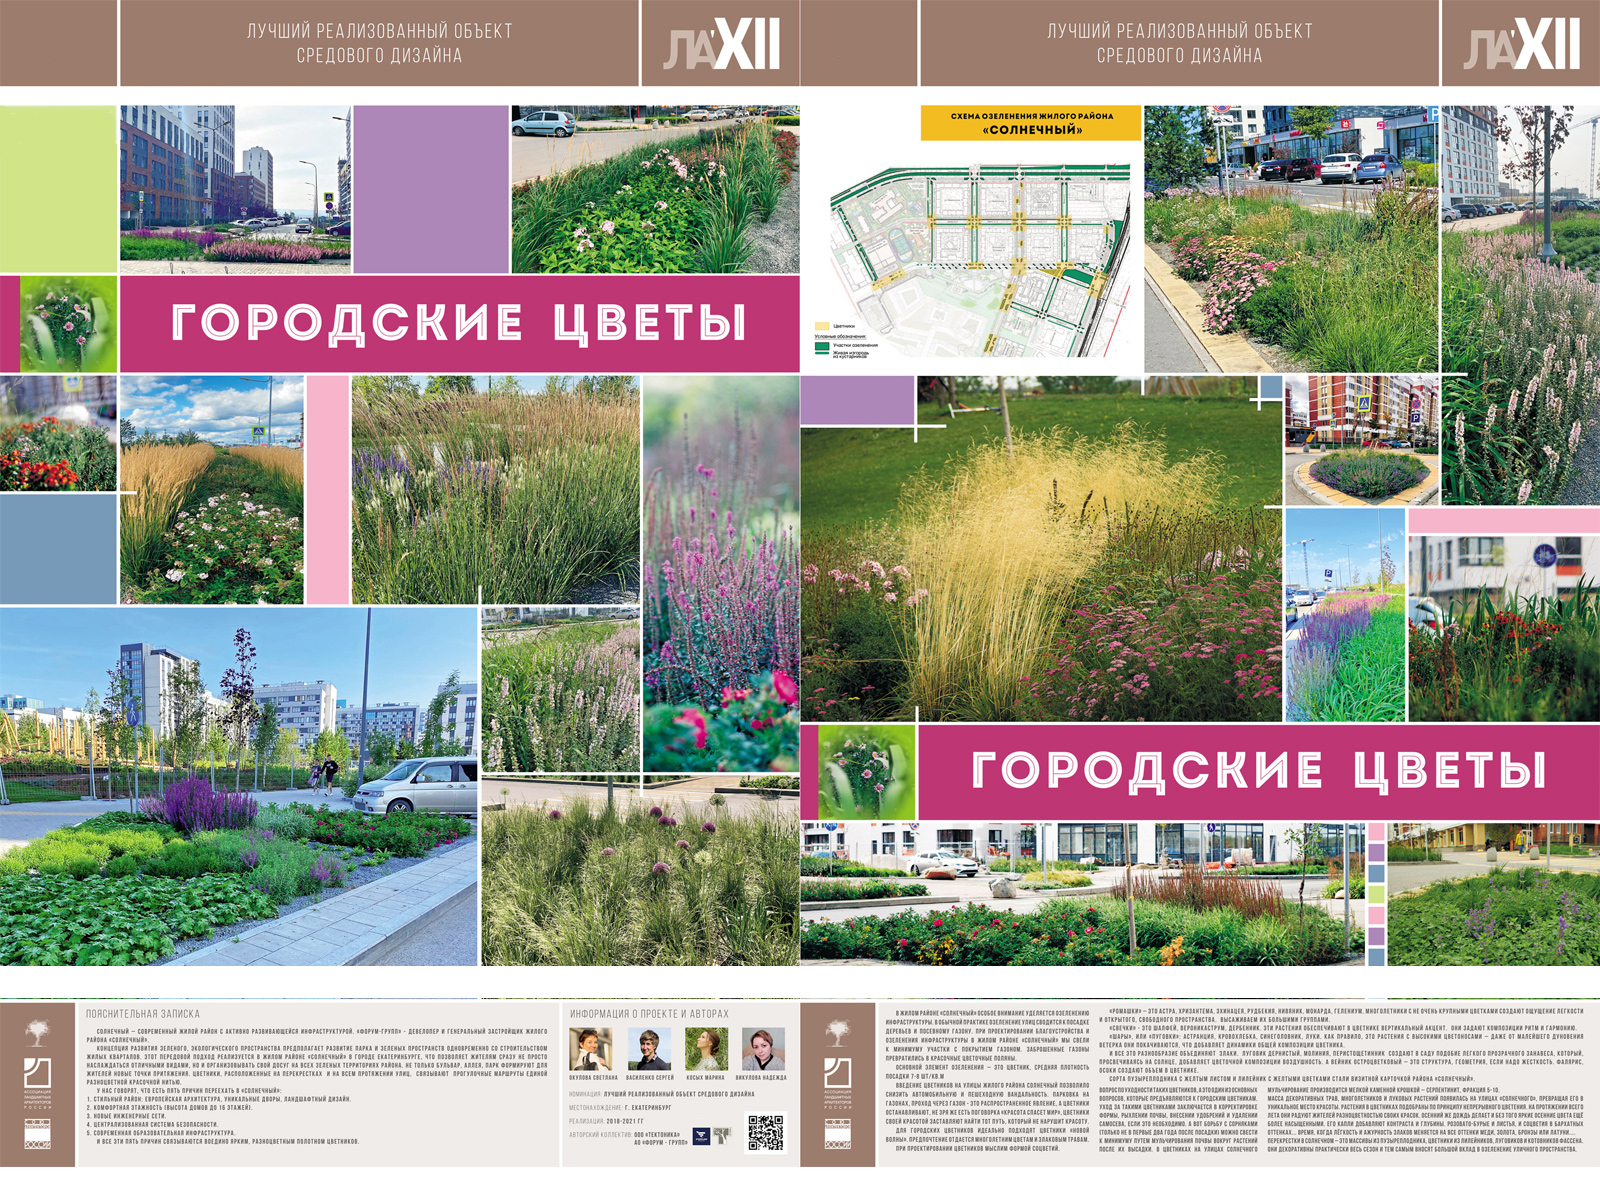 Городские цветы в г. Екатеринбурге (Золотой диплом) — лучший объект средового дизайна